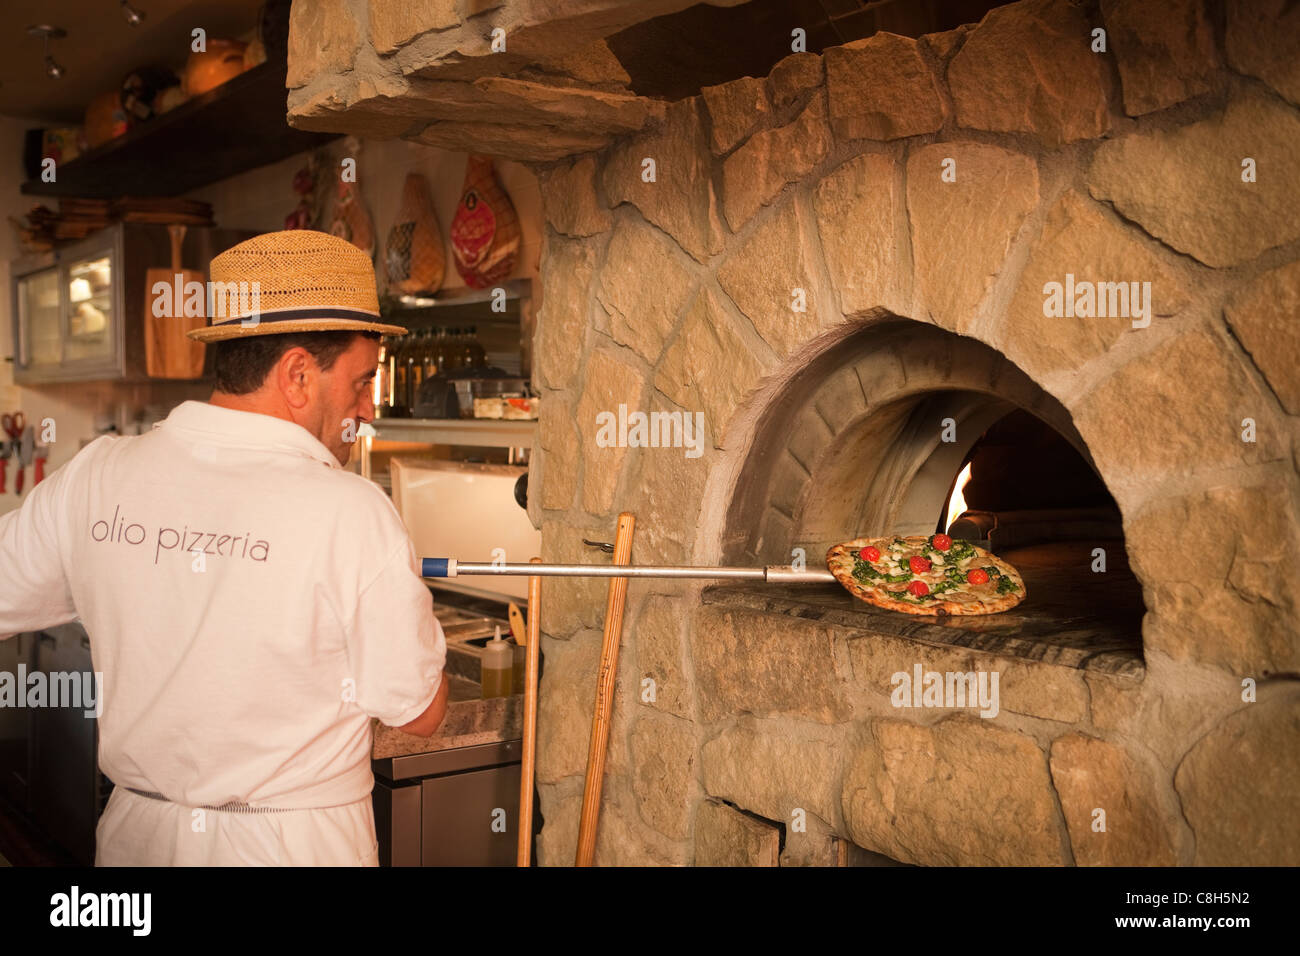 Hombre insertar paesana pizza en un horno de piedra para hornear